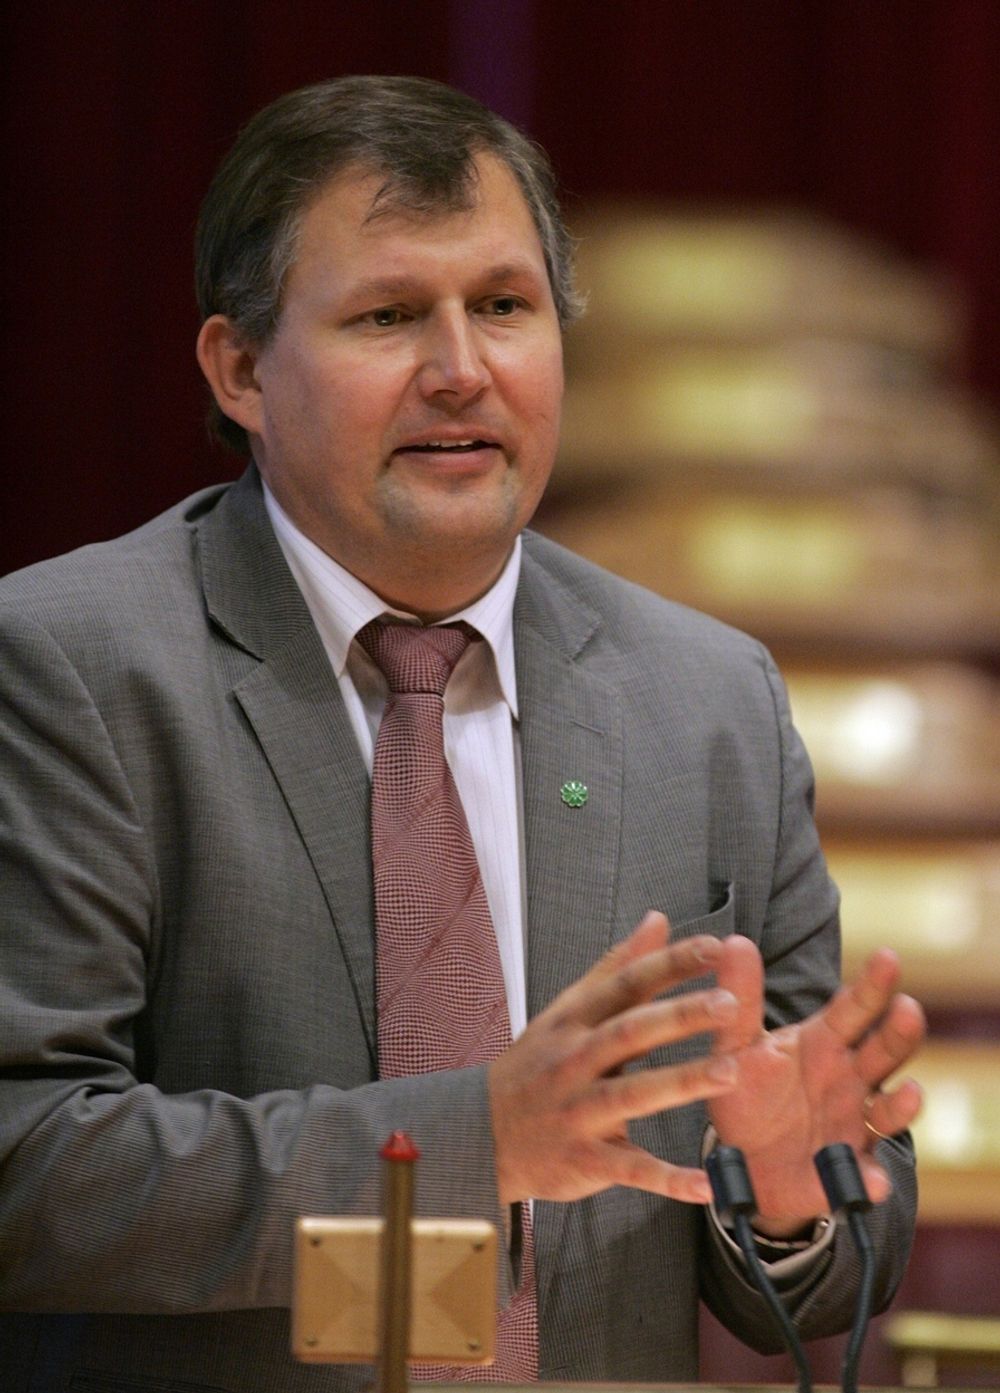 Olje- og energiminister Terje Riis-Johansen følger opp klimaforliket i budsjettet for 2009, hevder han.